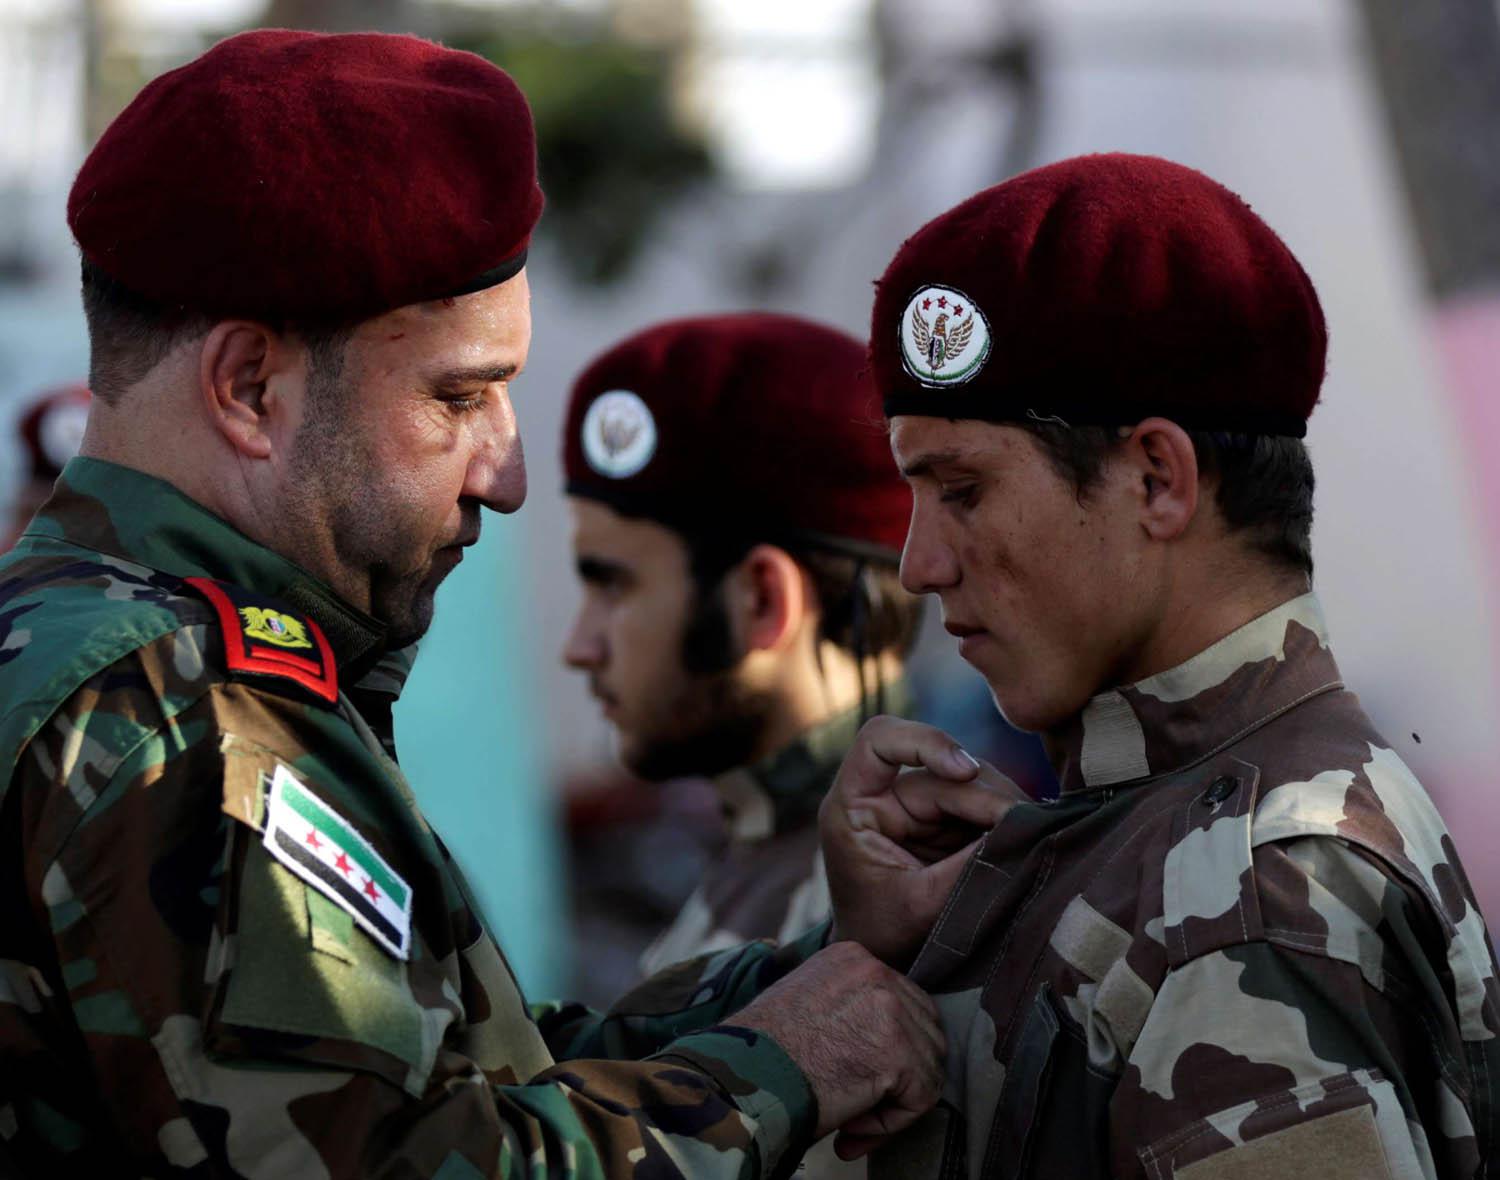 ضابط في الجيش الوطني السوري يقلد جنديا وساما